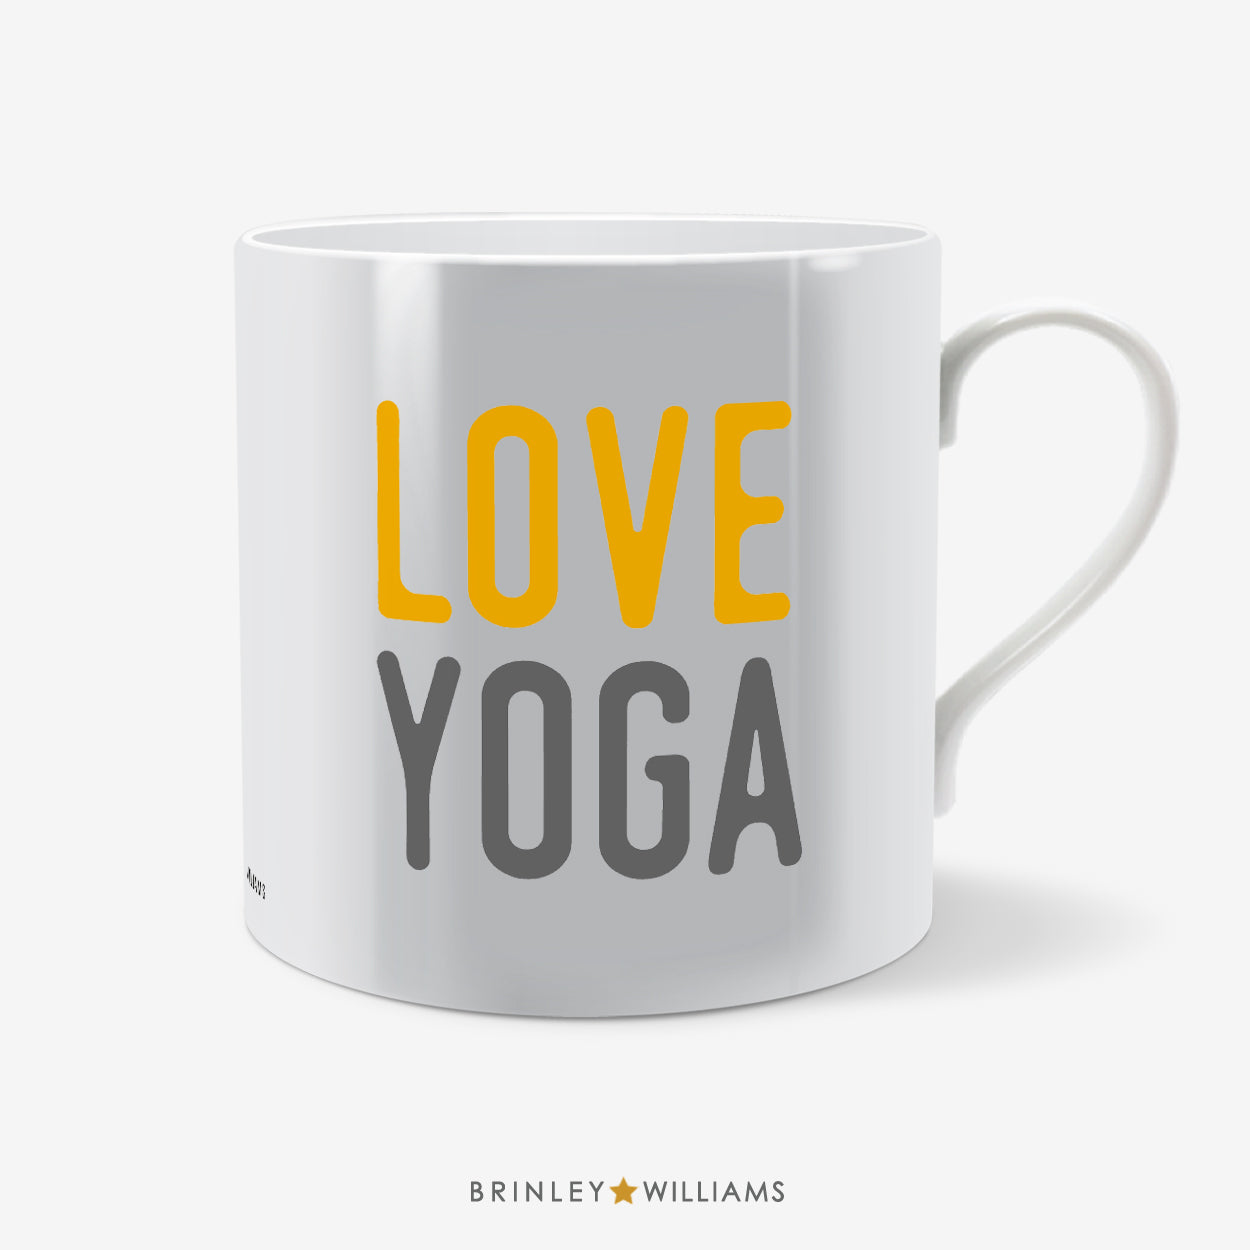 Love Yoga Mug - Yellow